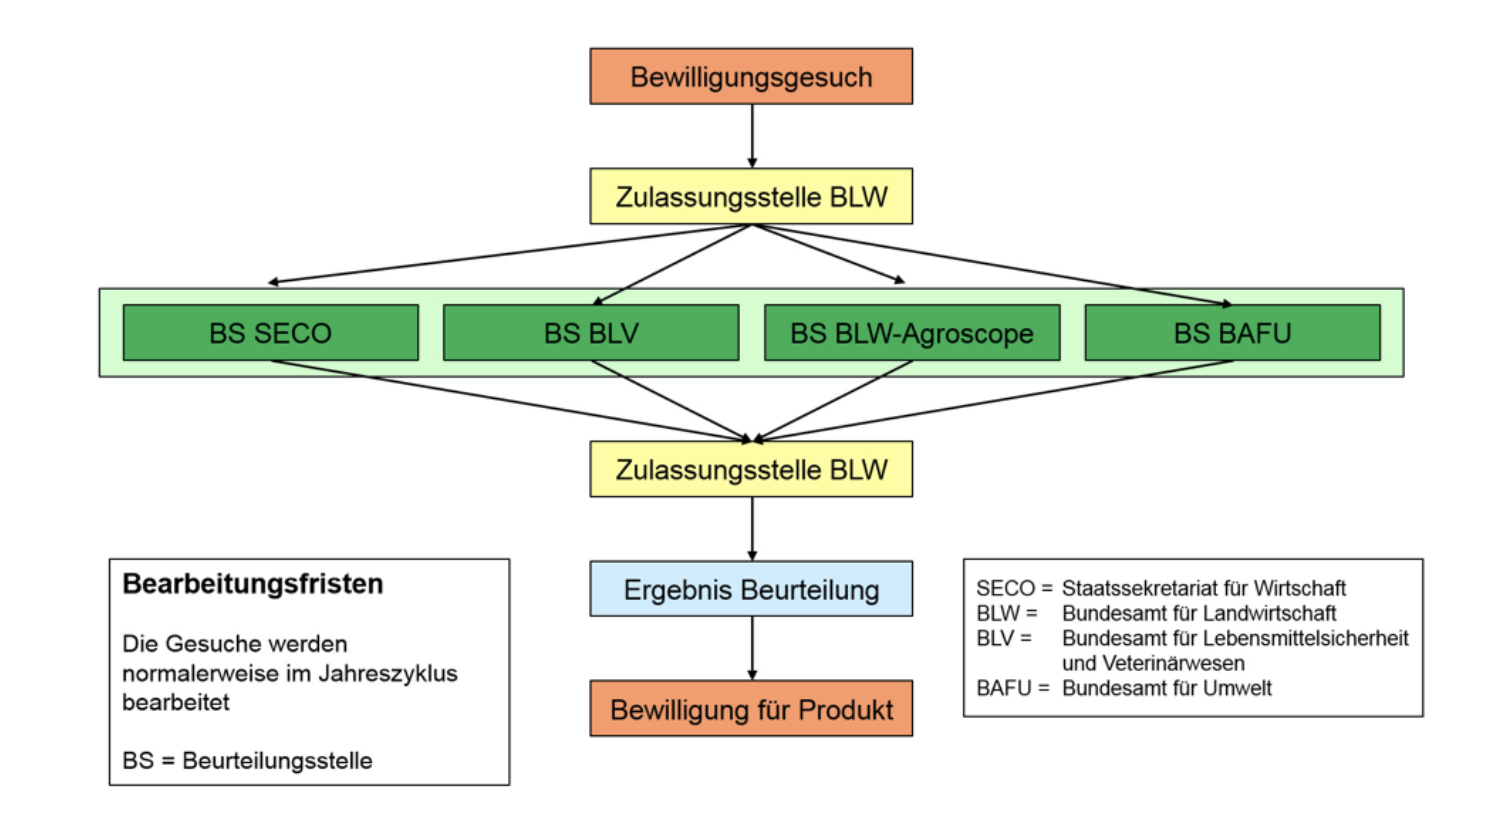 Übersich über das Bewilligungsverfahren von Pflanzenschutzmitteln in der Schweiz. Grafik: SECO.